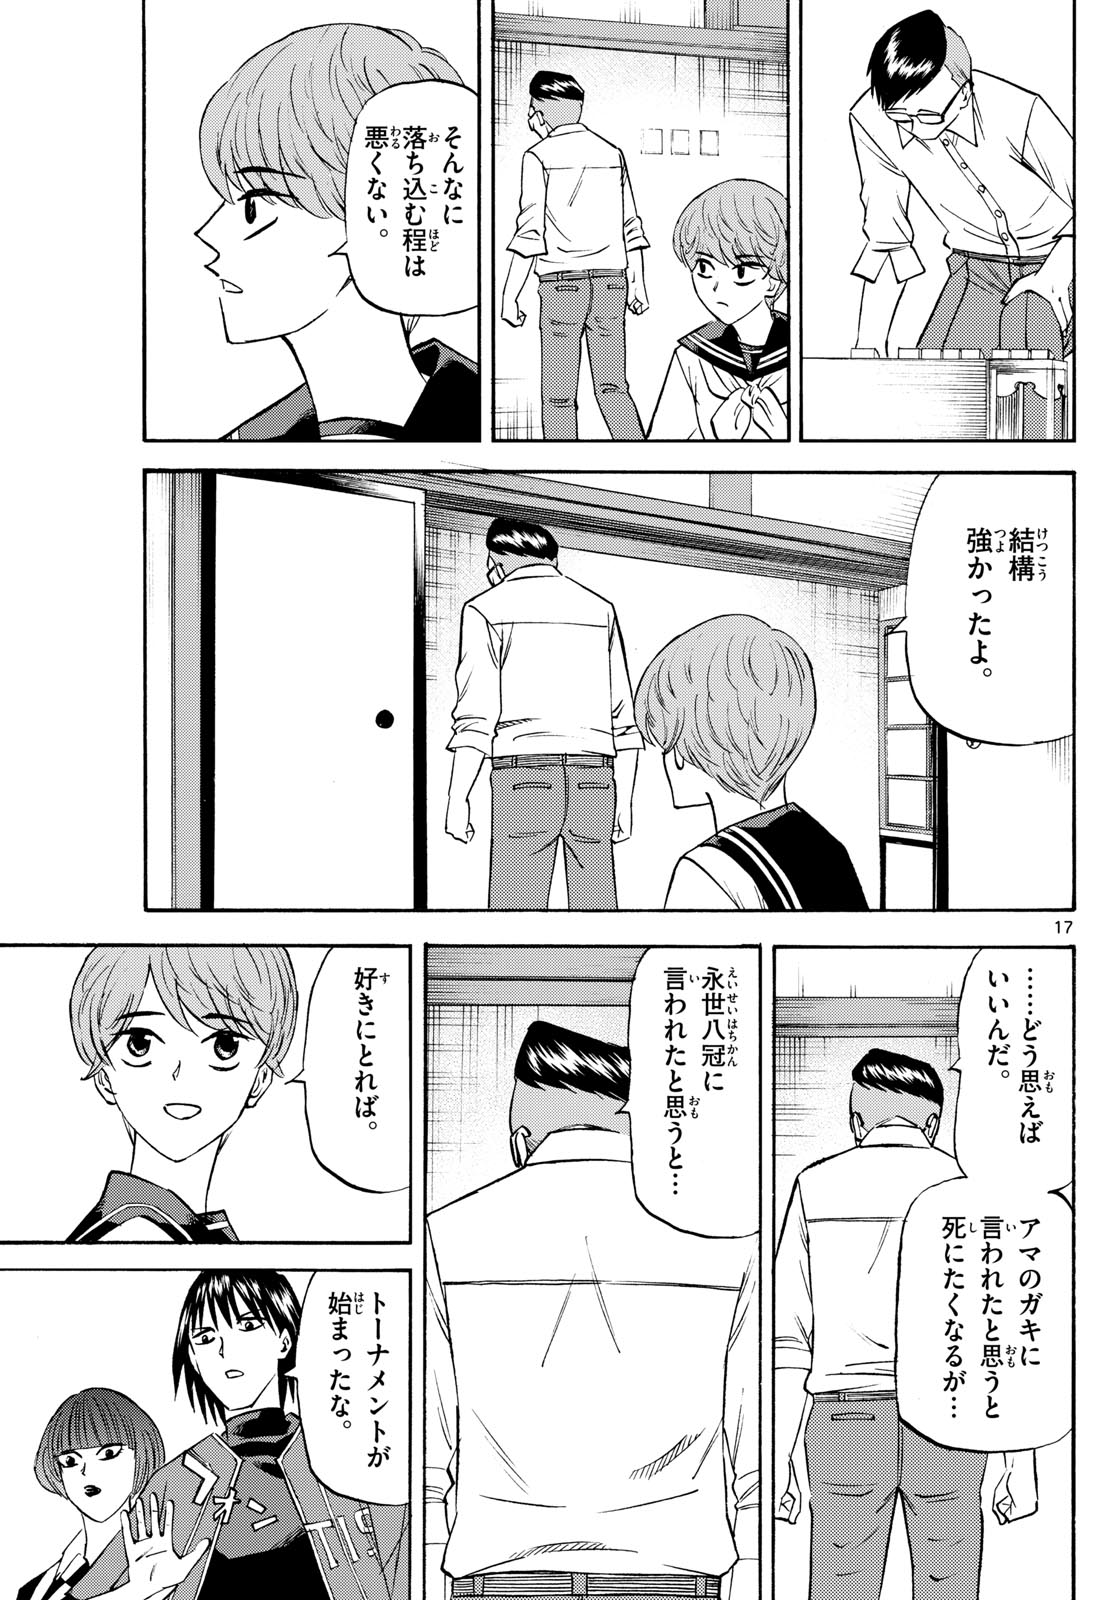 Tatsu to Ichigo - Chapter 196 - Page 17